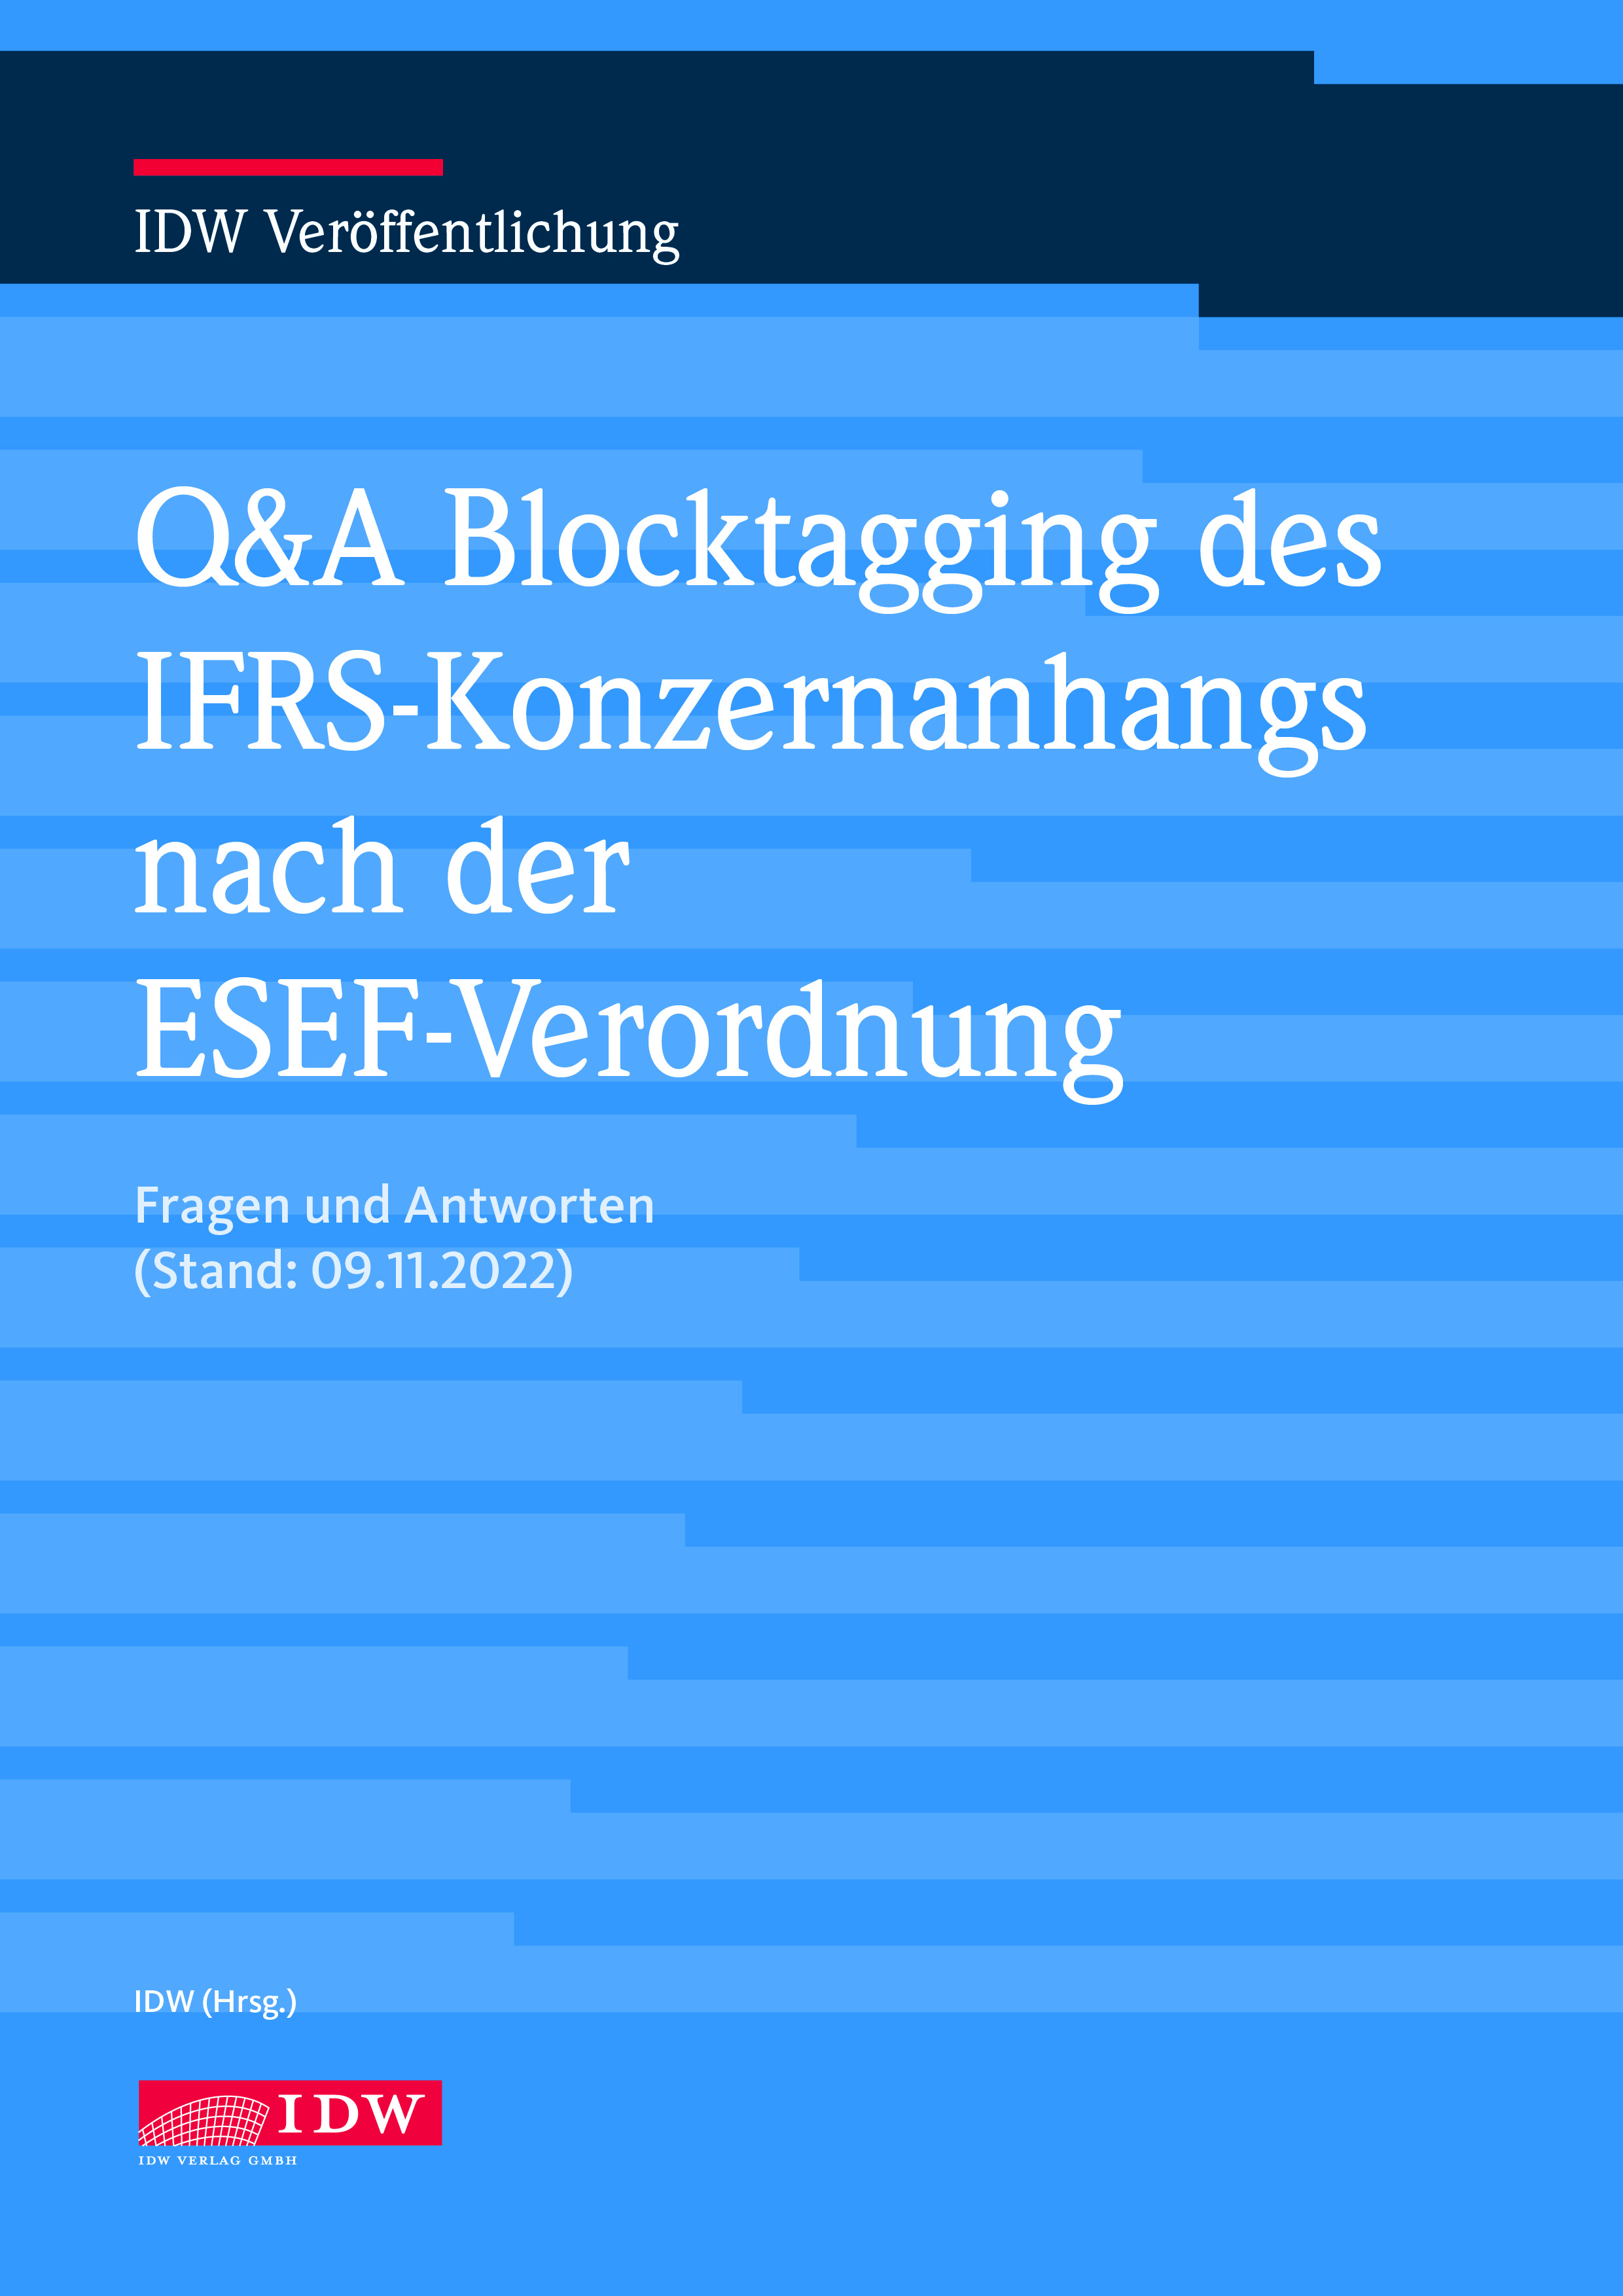 Q&A Blocktagging des IFRS-Konzernanhangs nach der ESEF-Verordnung